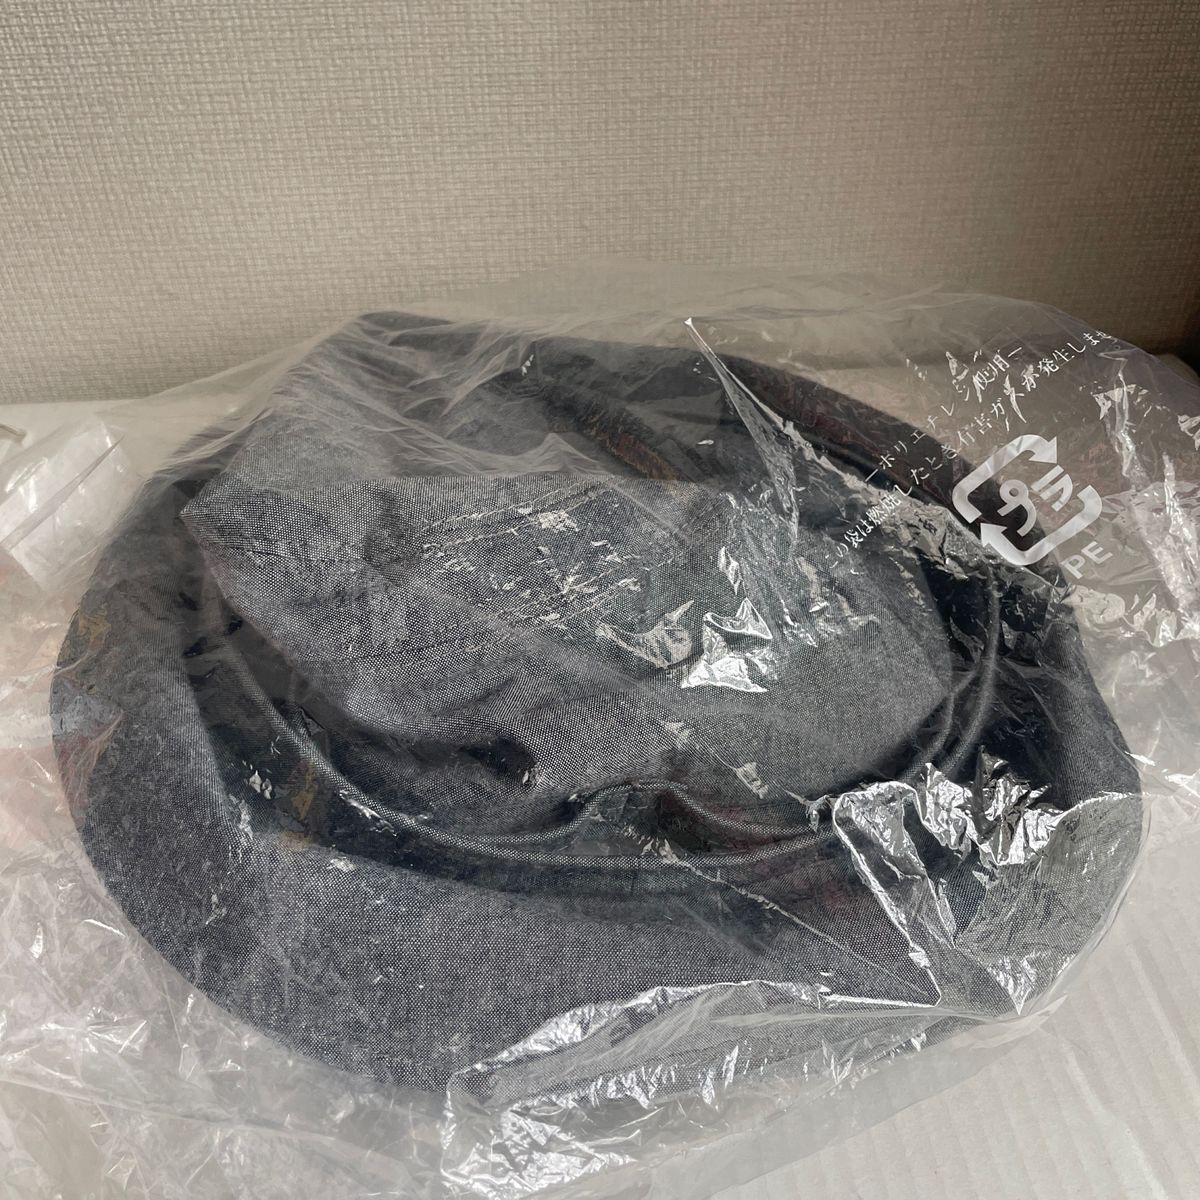 【新品】通販生活 ベルヌーイの帽子 カタログハウス グレー M(54〜56cm) 旧モデル 旧デザイン